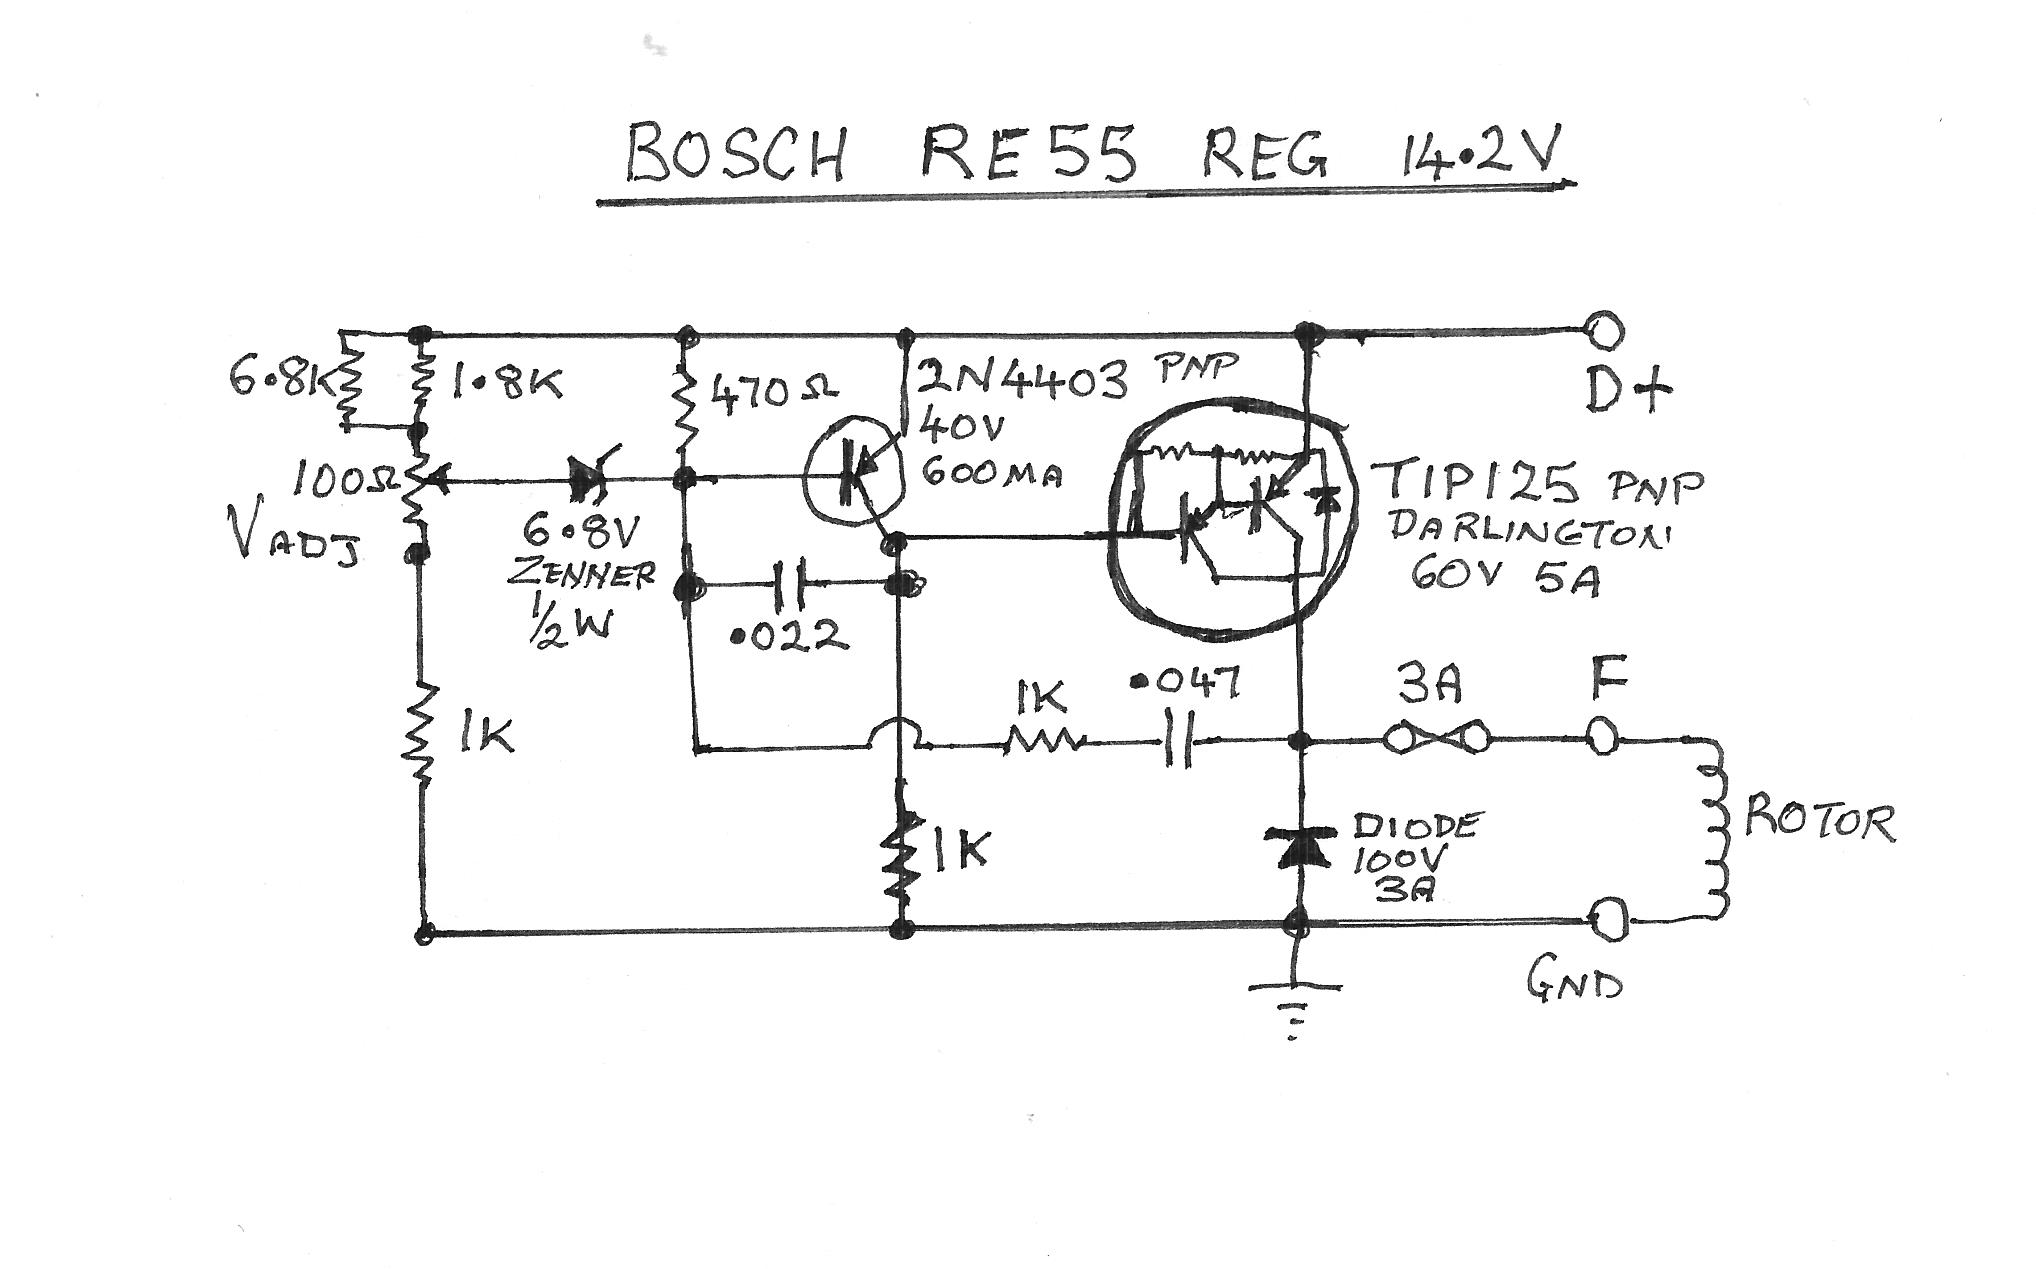 BOSCH RE55 REG CIRC.jpg